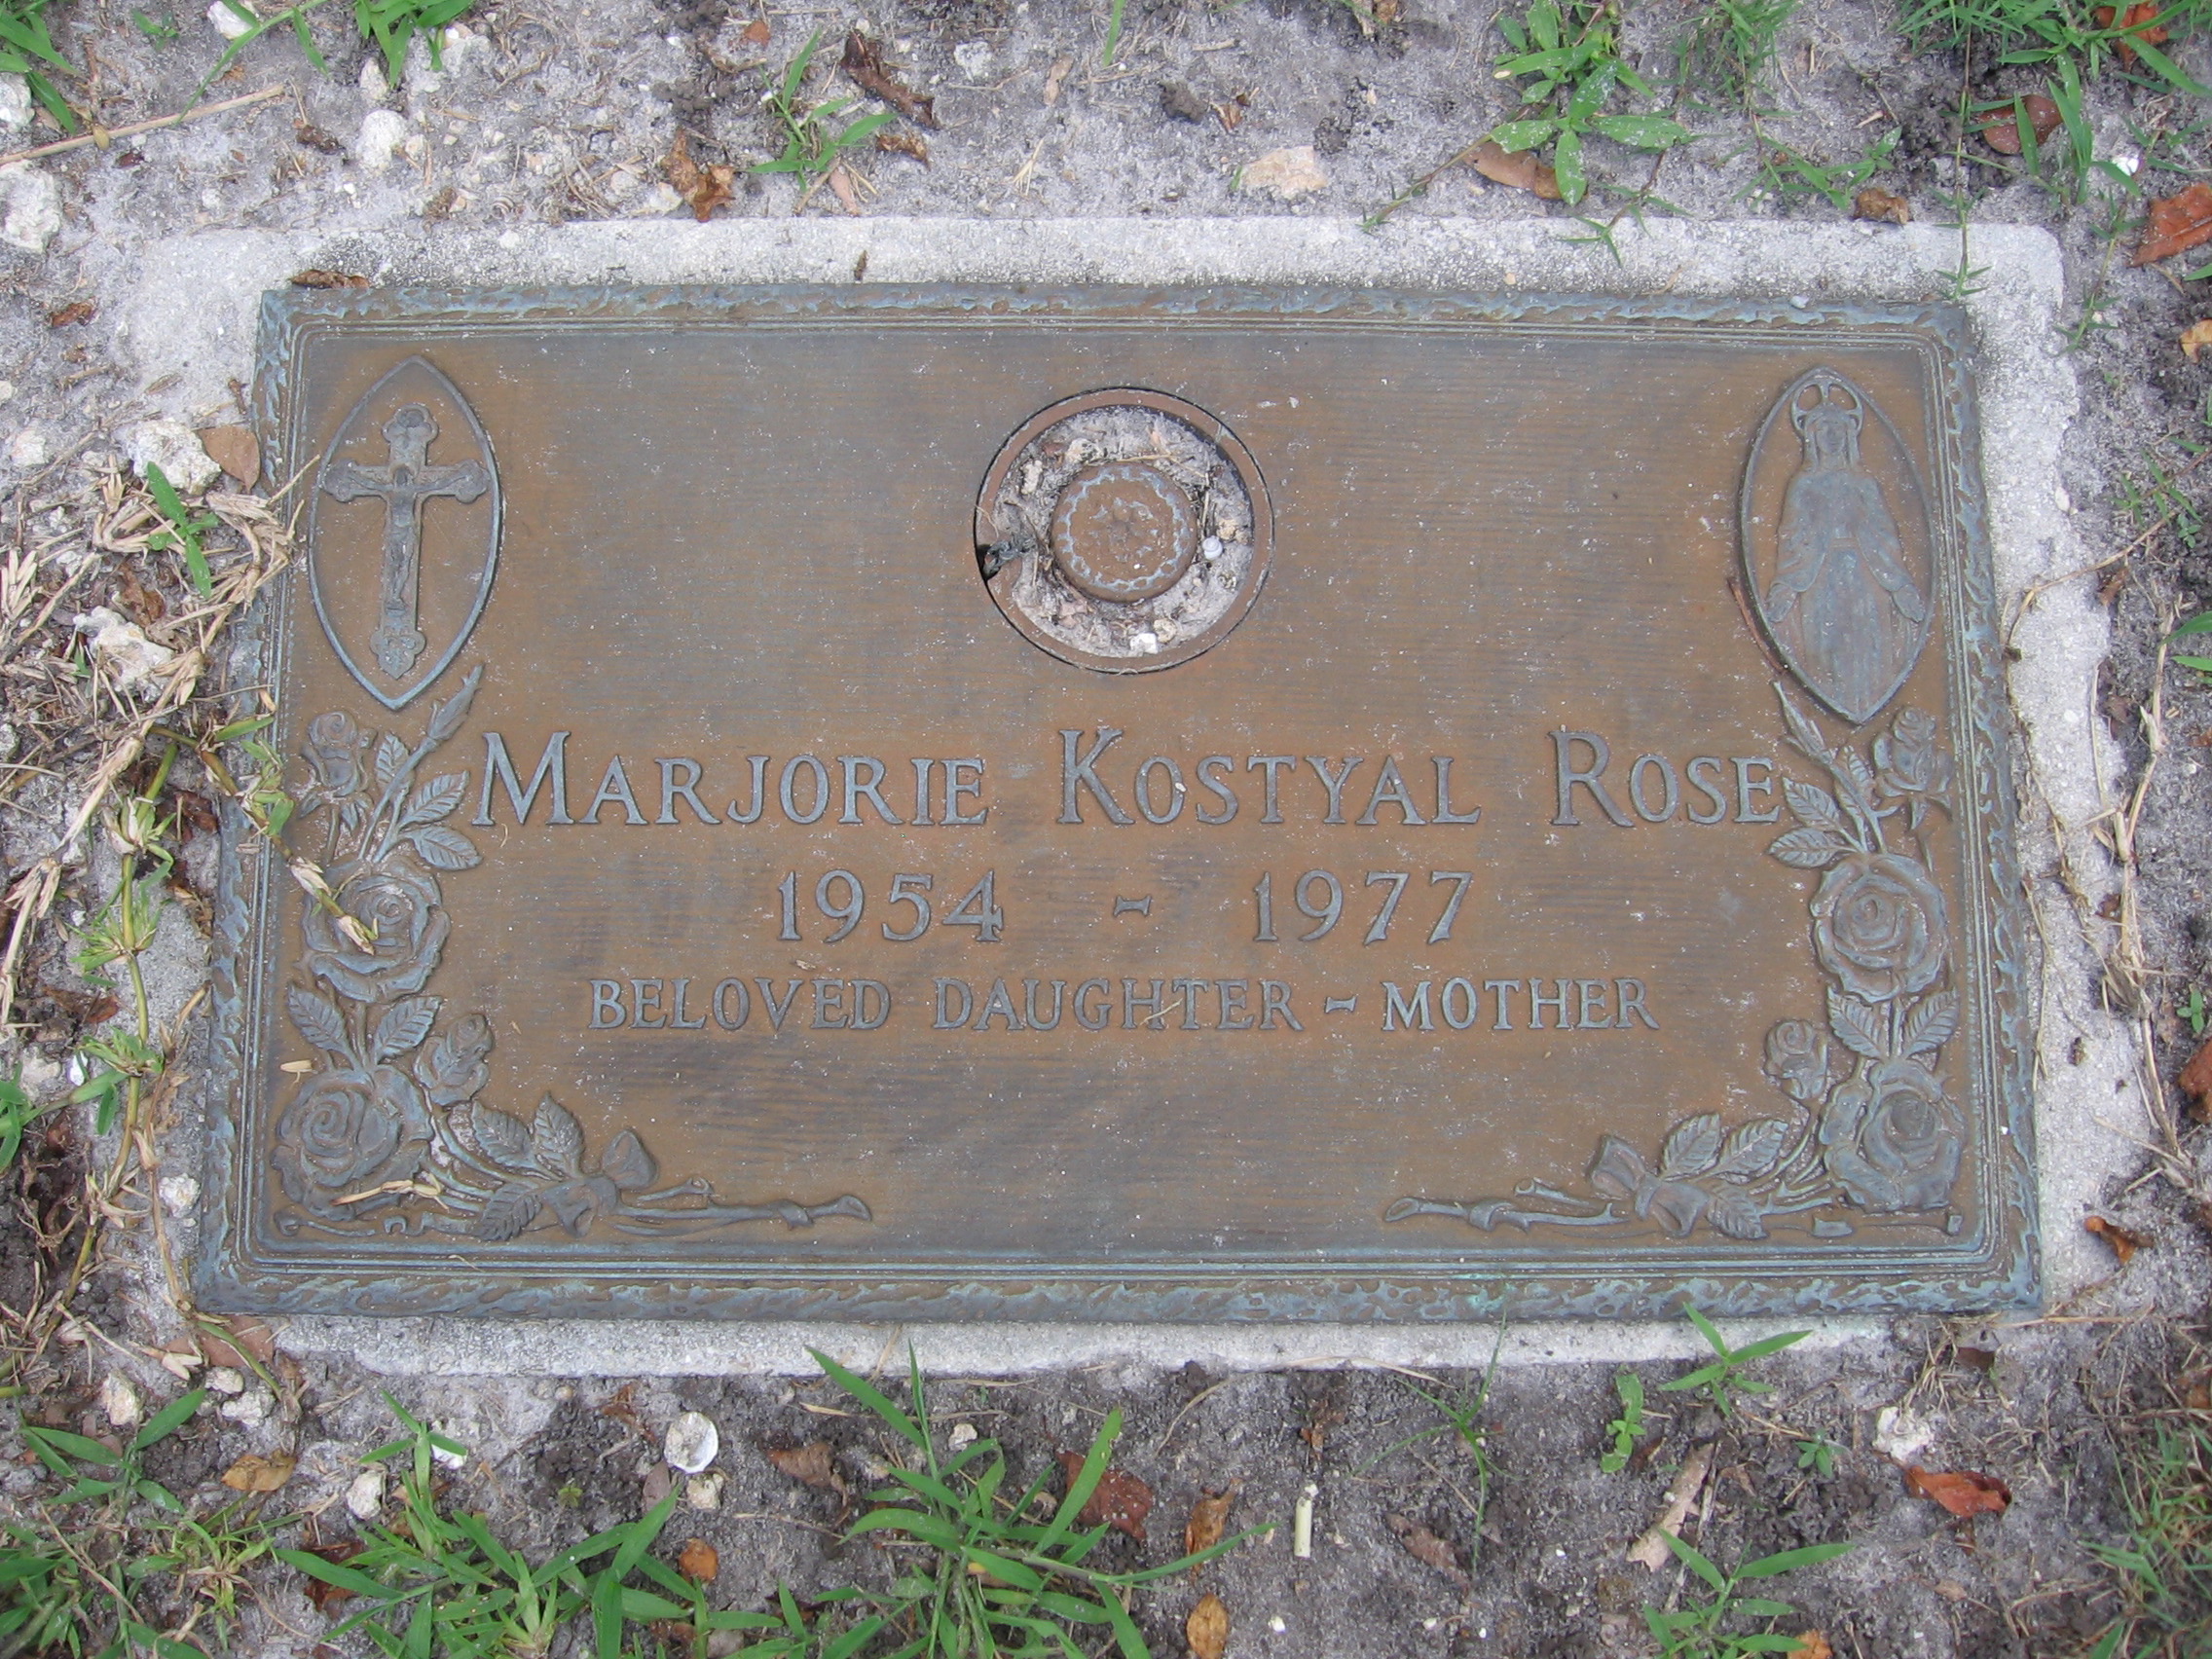 Marjorie Kostyal Rose